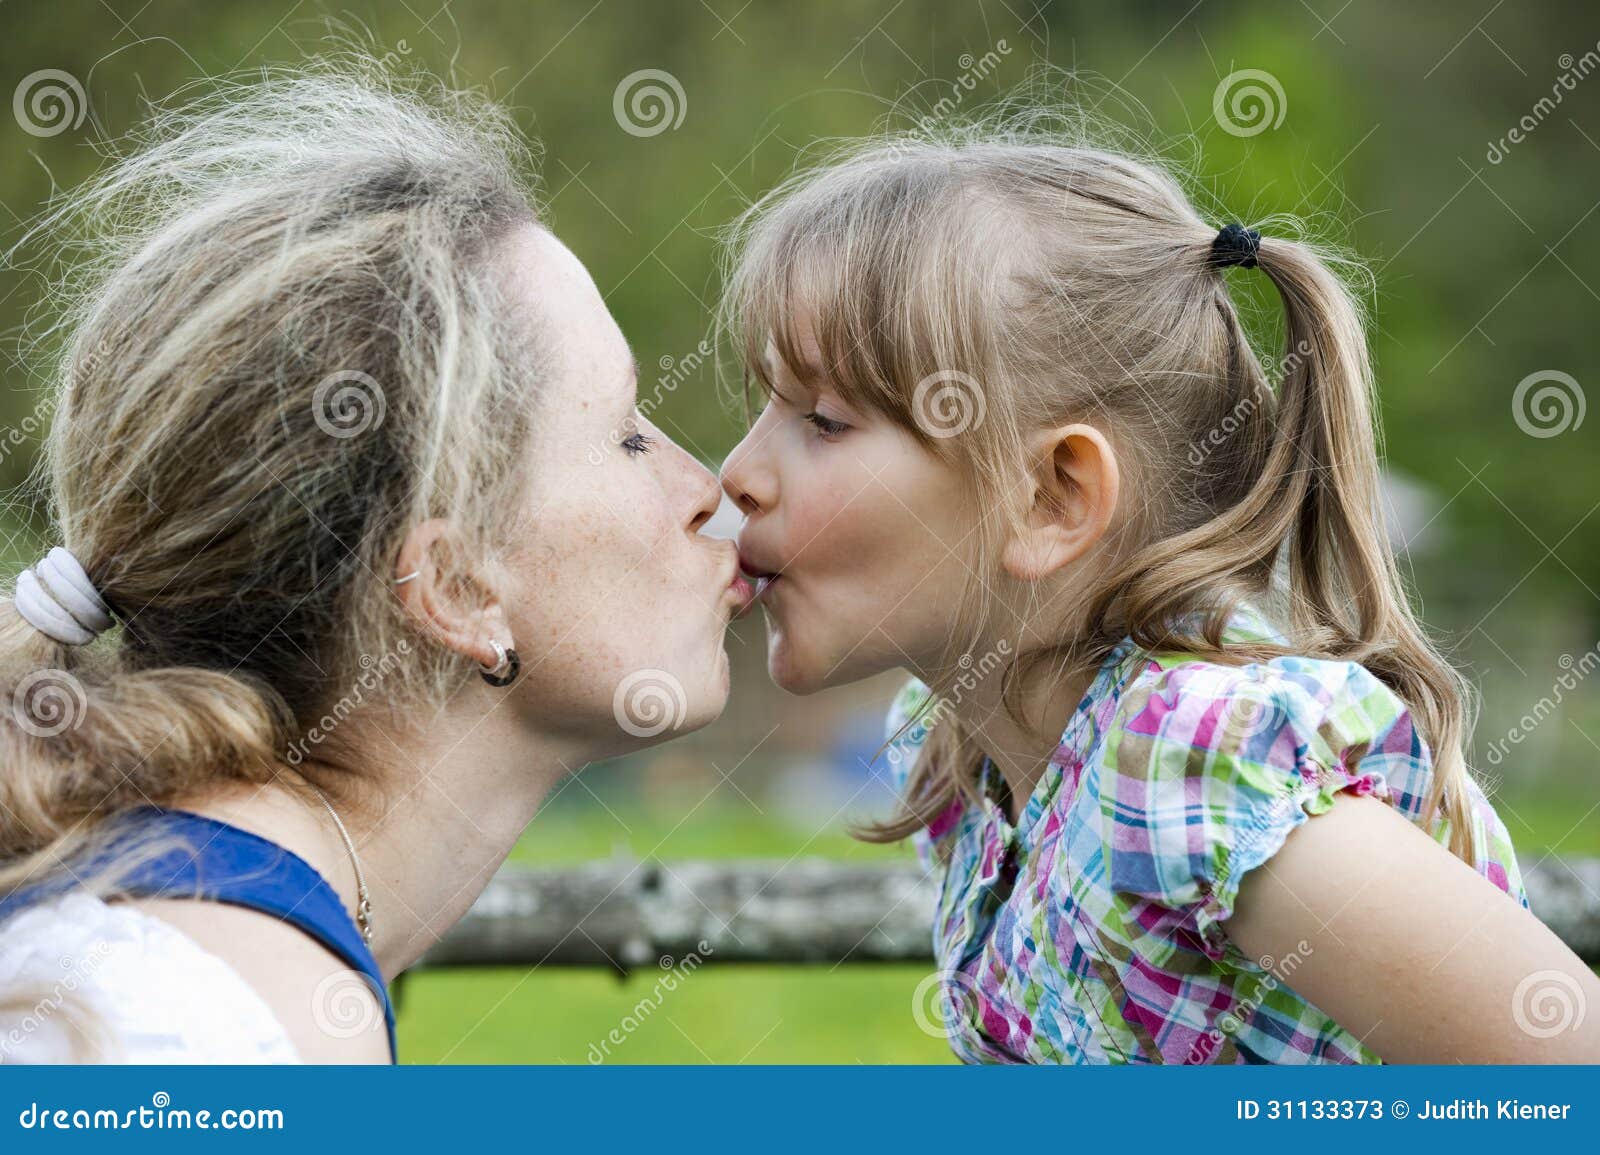 Девушка лижет бабушкам. Мать целует дочь. Мать и дочь поцелуй. Мама с дочкой поцелуи с языком.